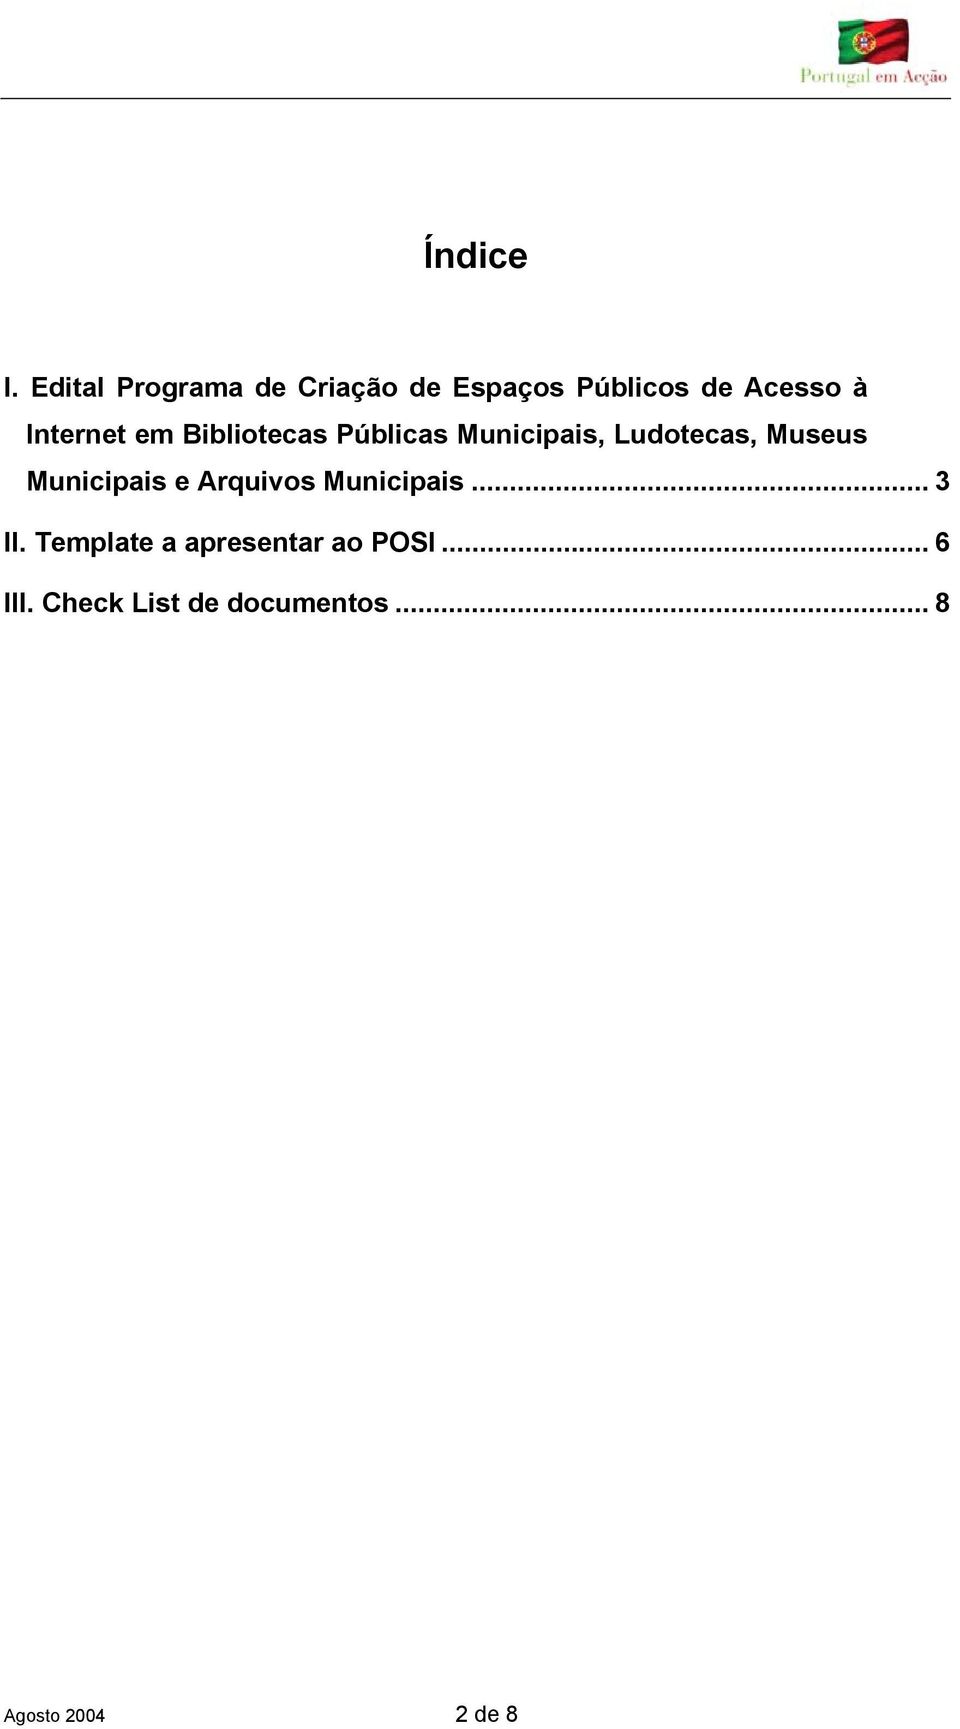 Internet em Bibliotecas Públicas Municipais, Ludotecas, Museus